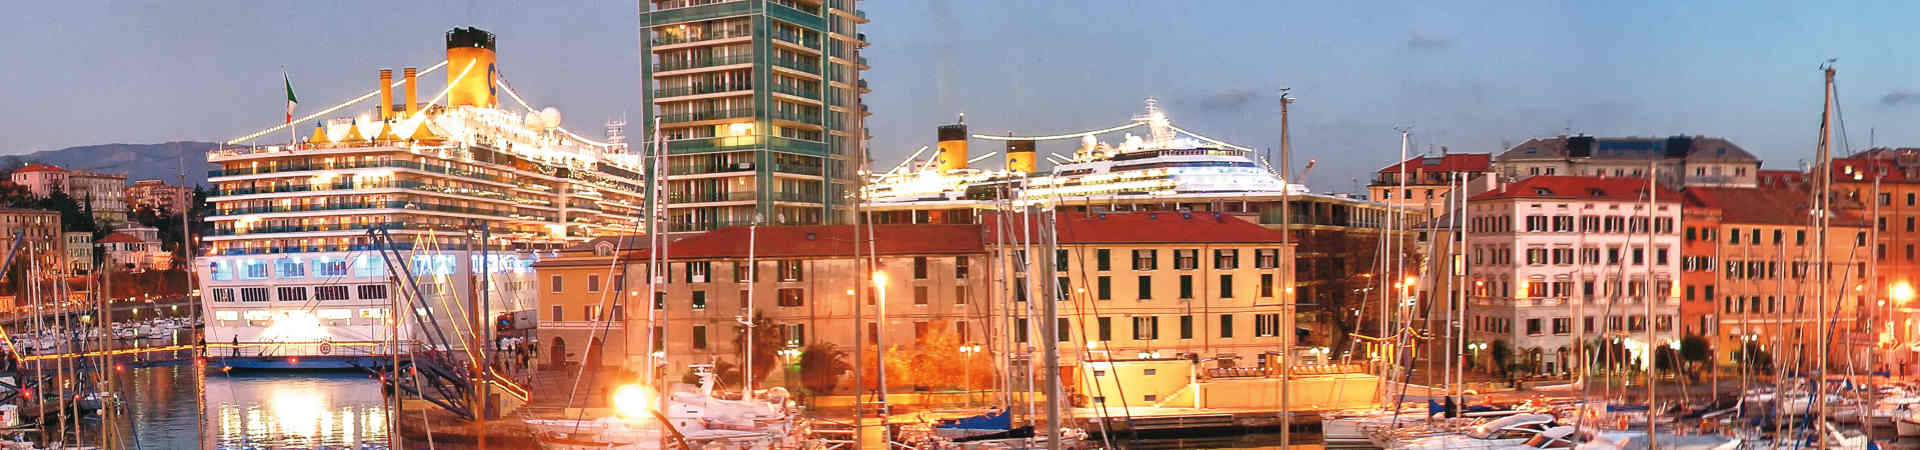 Imatge recurs del port de destinació Savona per a la ruta en ferry Bastia - Savona